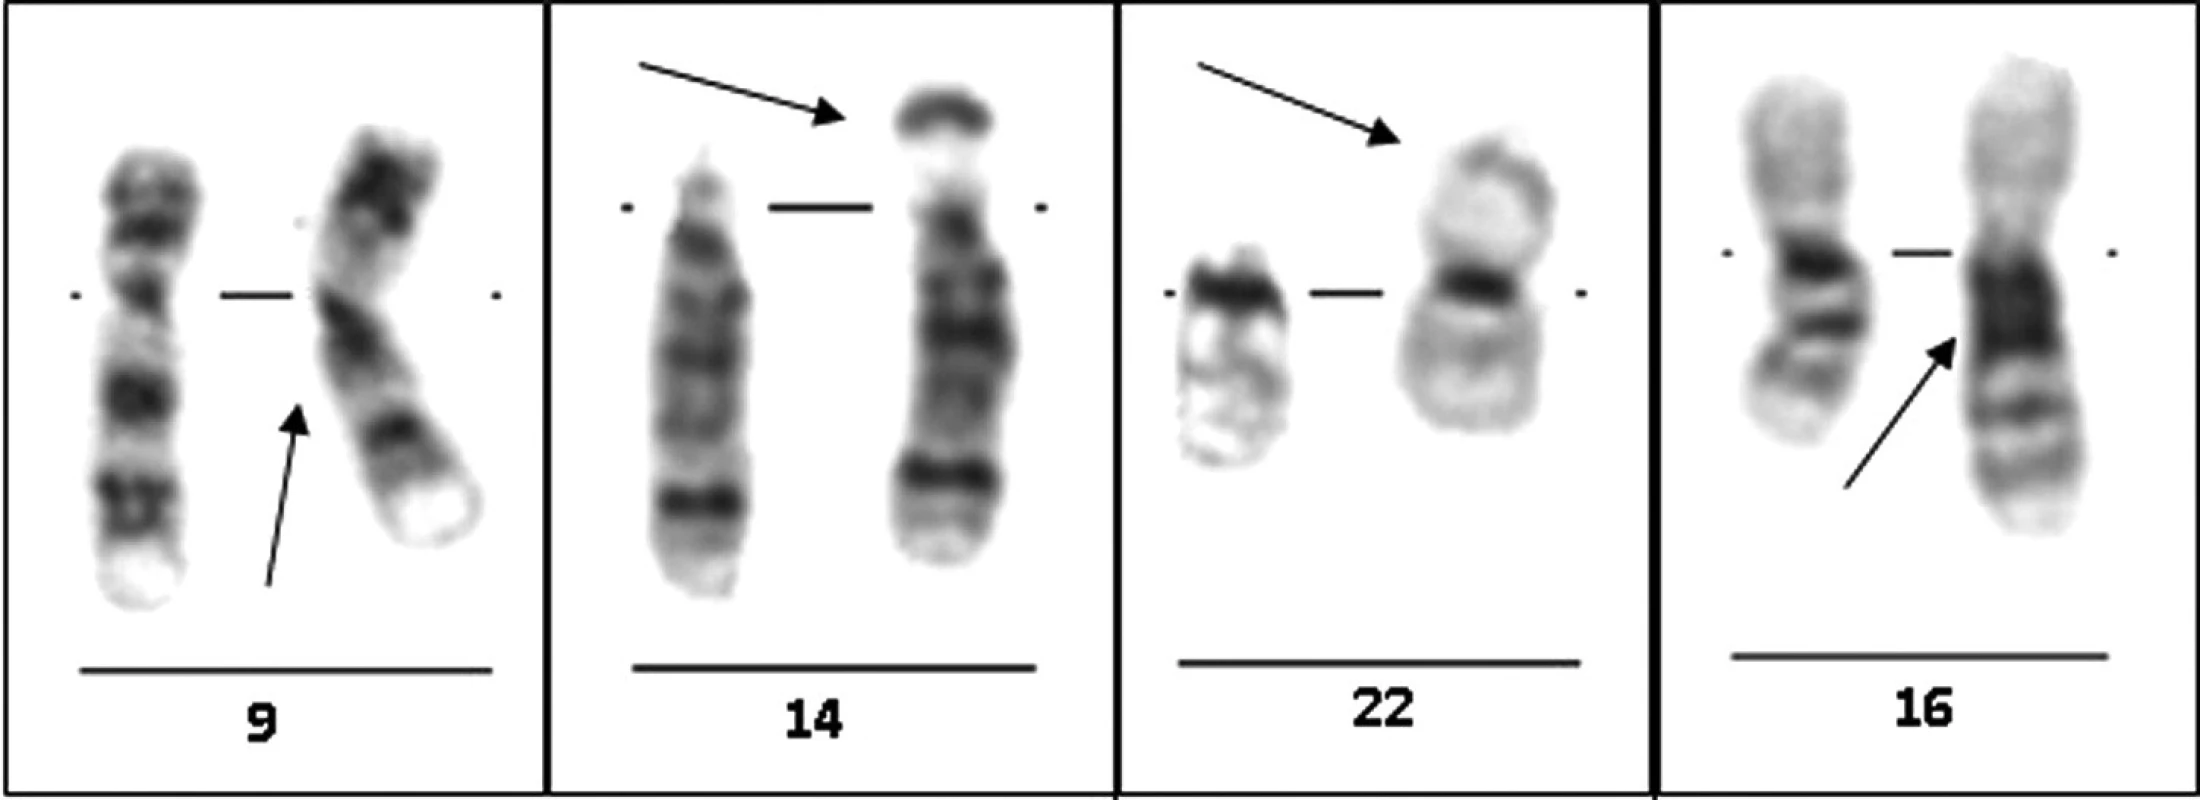 Vybrané varianty lidského karyotypu – standardní cytogenetické vyšetření: G-pruhování, zleva doprava: inv(9)(p12q13), 14ps+, 22pstk+ a 16qh+